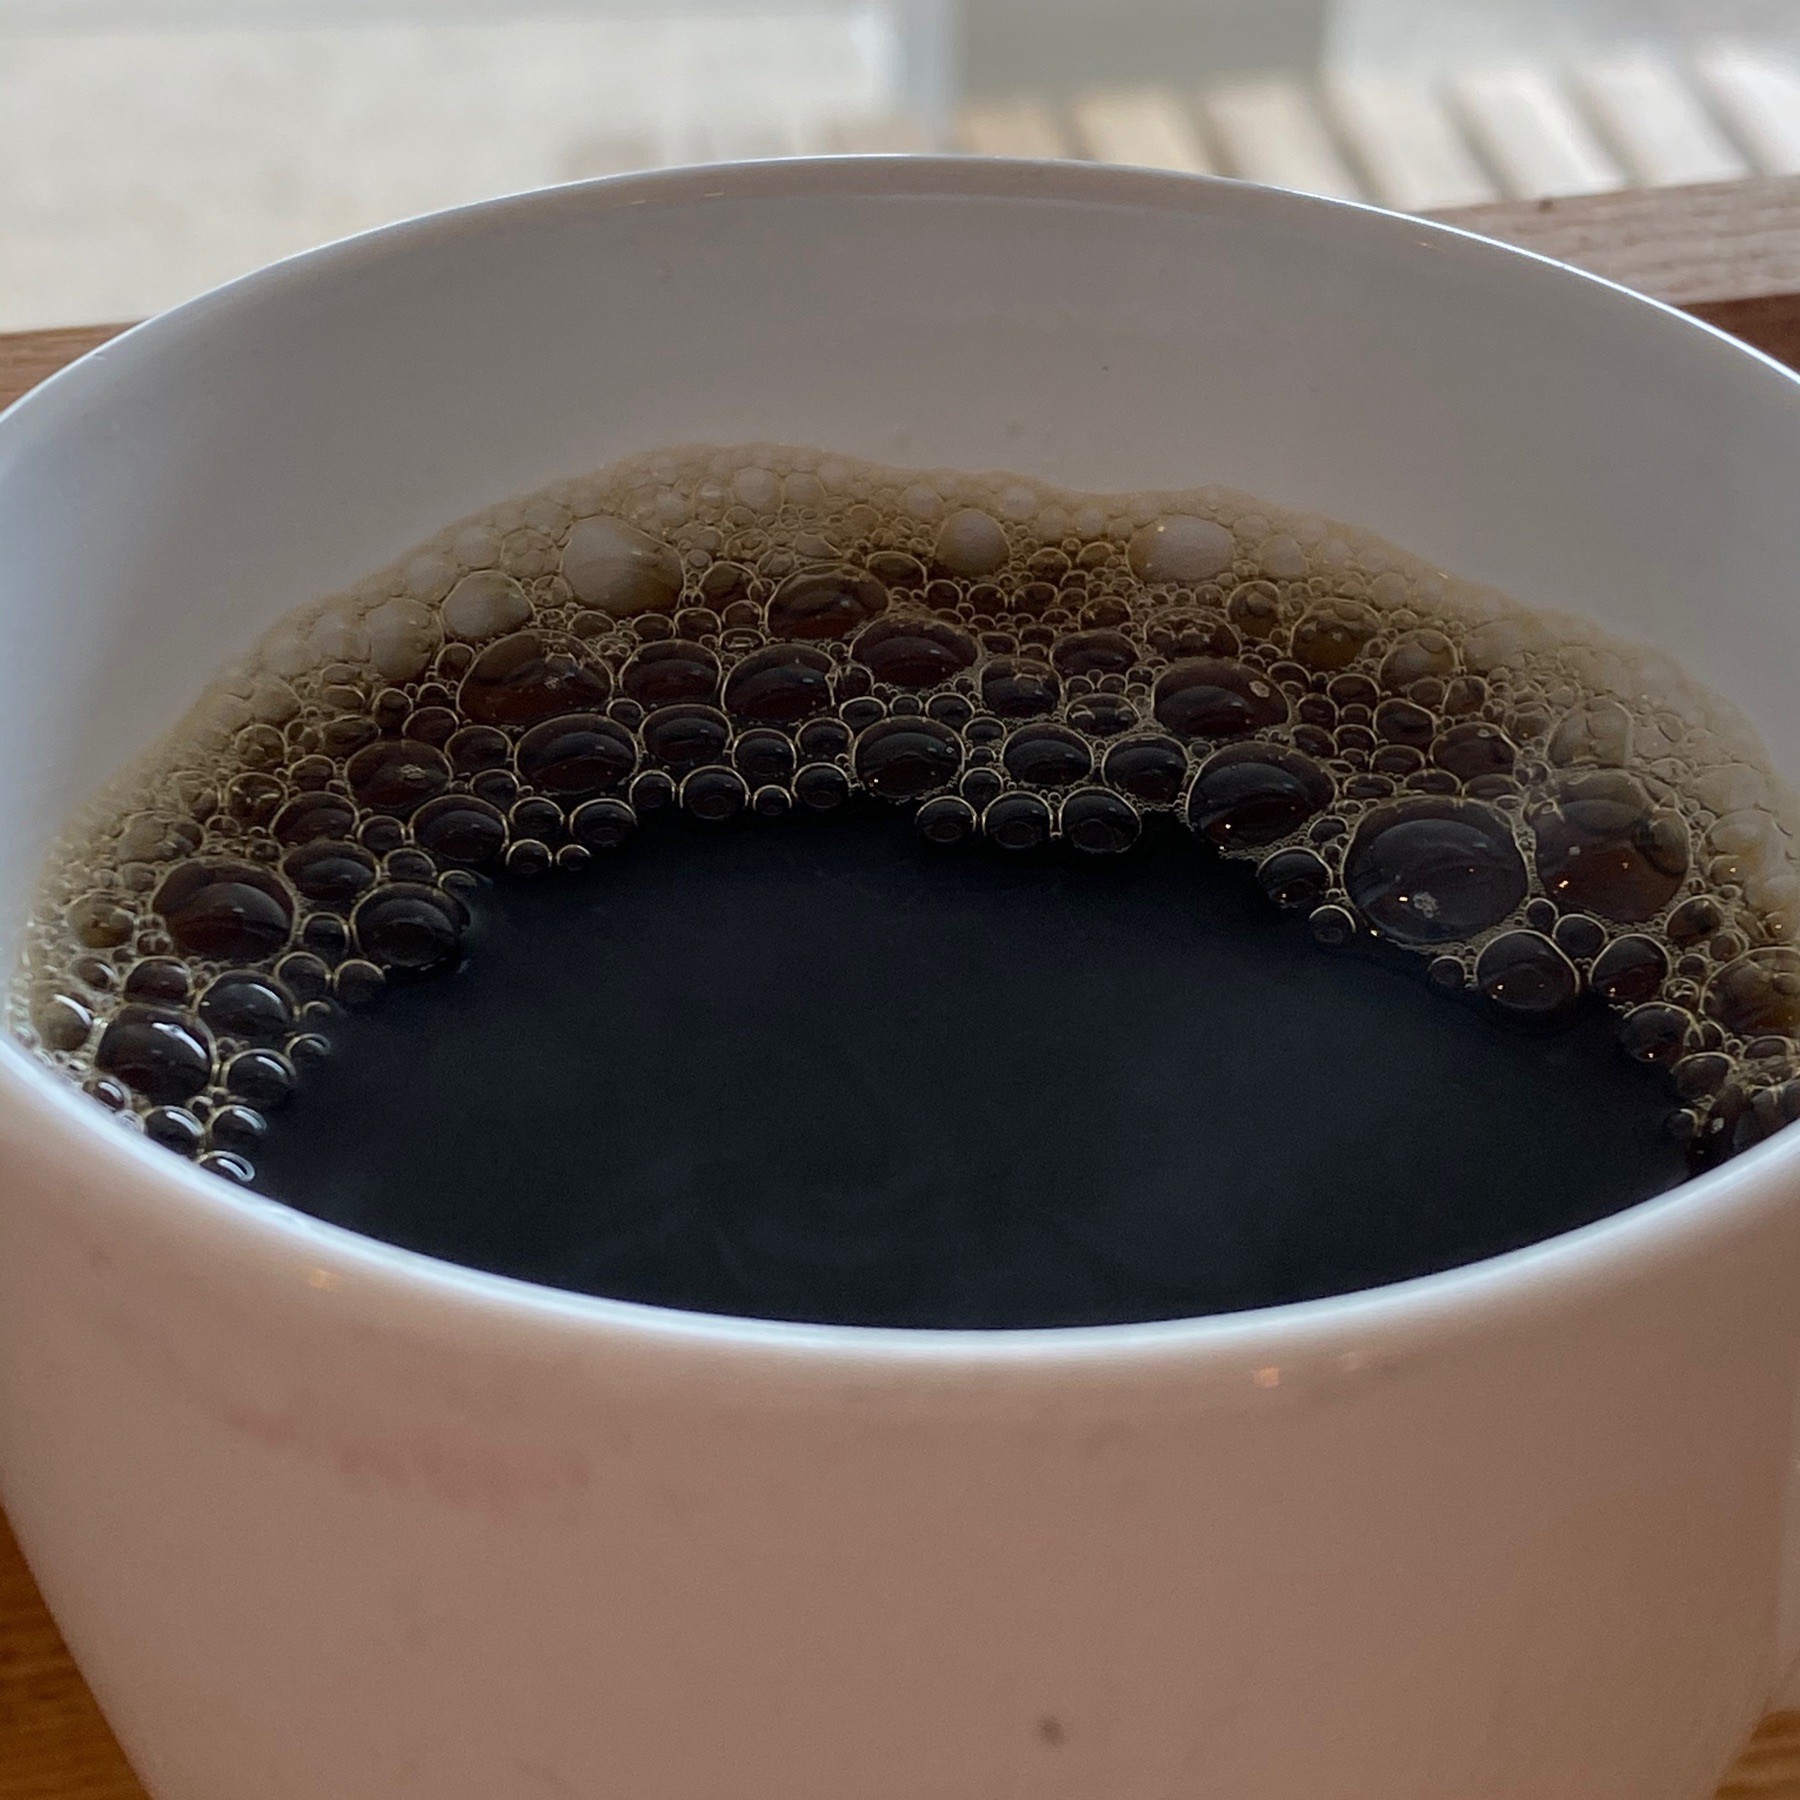 coffee in mug